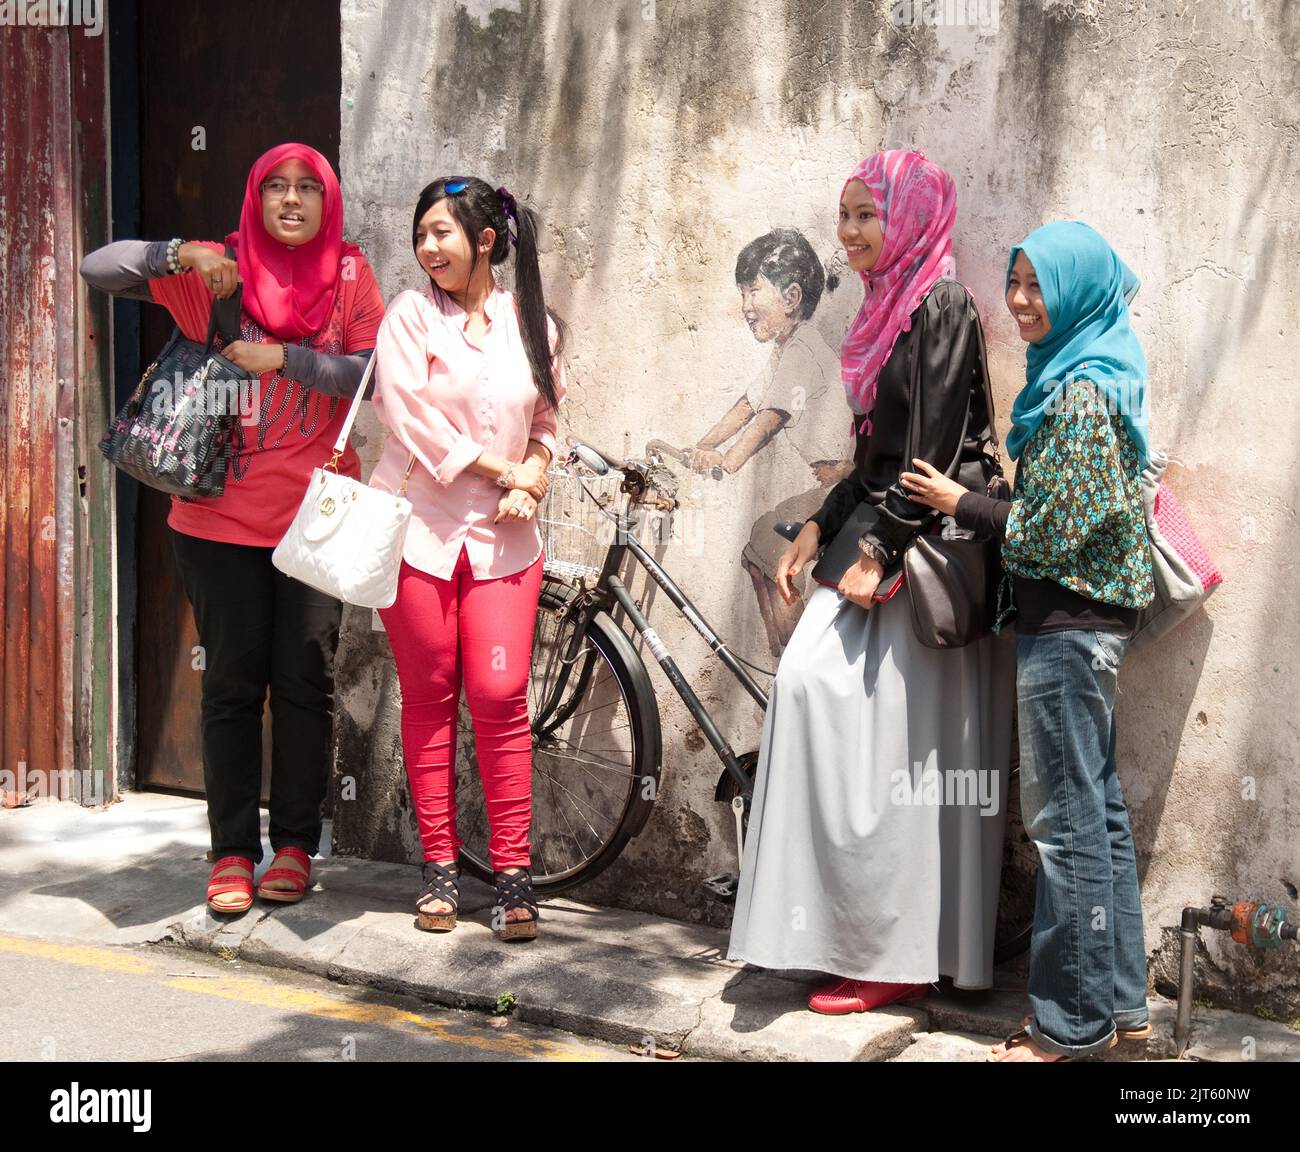 Posant autour de Street Art, George Town, Penang, Malaisie, Asie. Les jeunes femmes musulmanes s'amusent et s'amusent. L'art de la rue est très commun en G. Banque D'Images